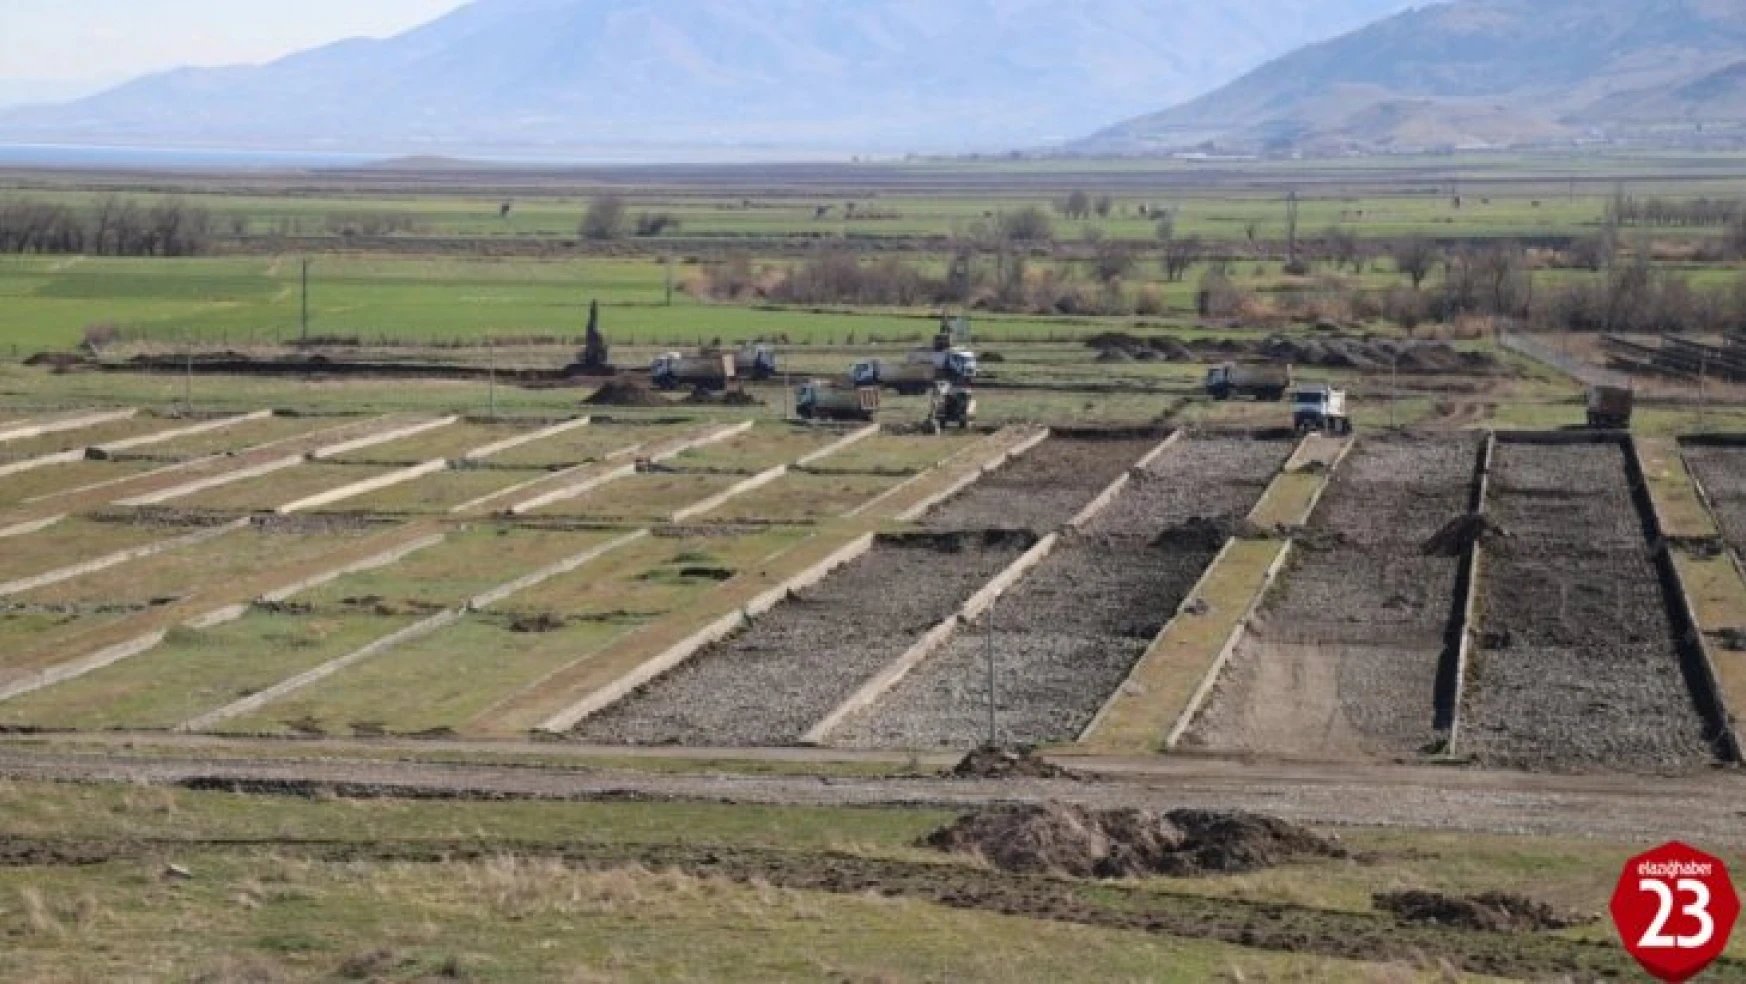 Elazığ'da biyolojik atık su arıtma tesisi için ilk kazma vuruldu